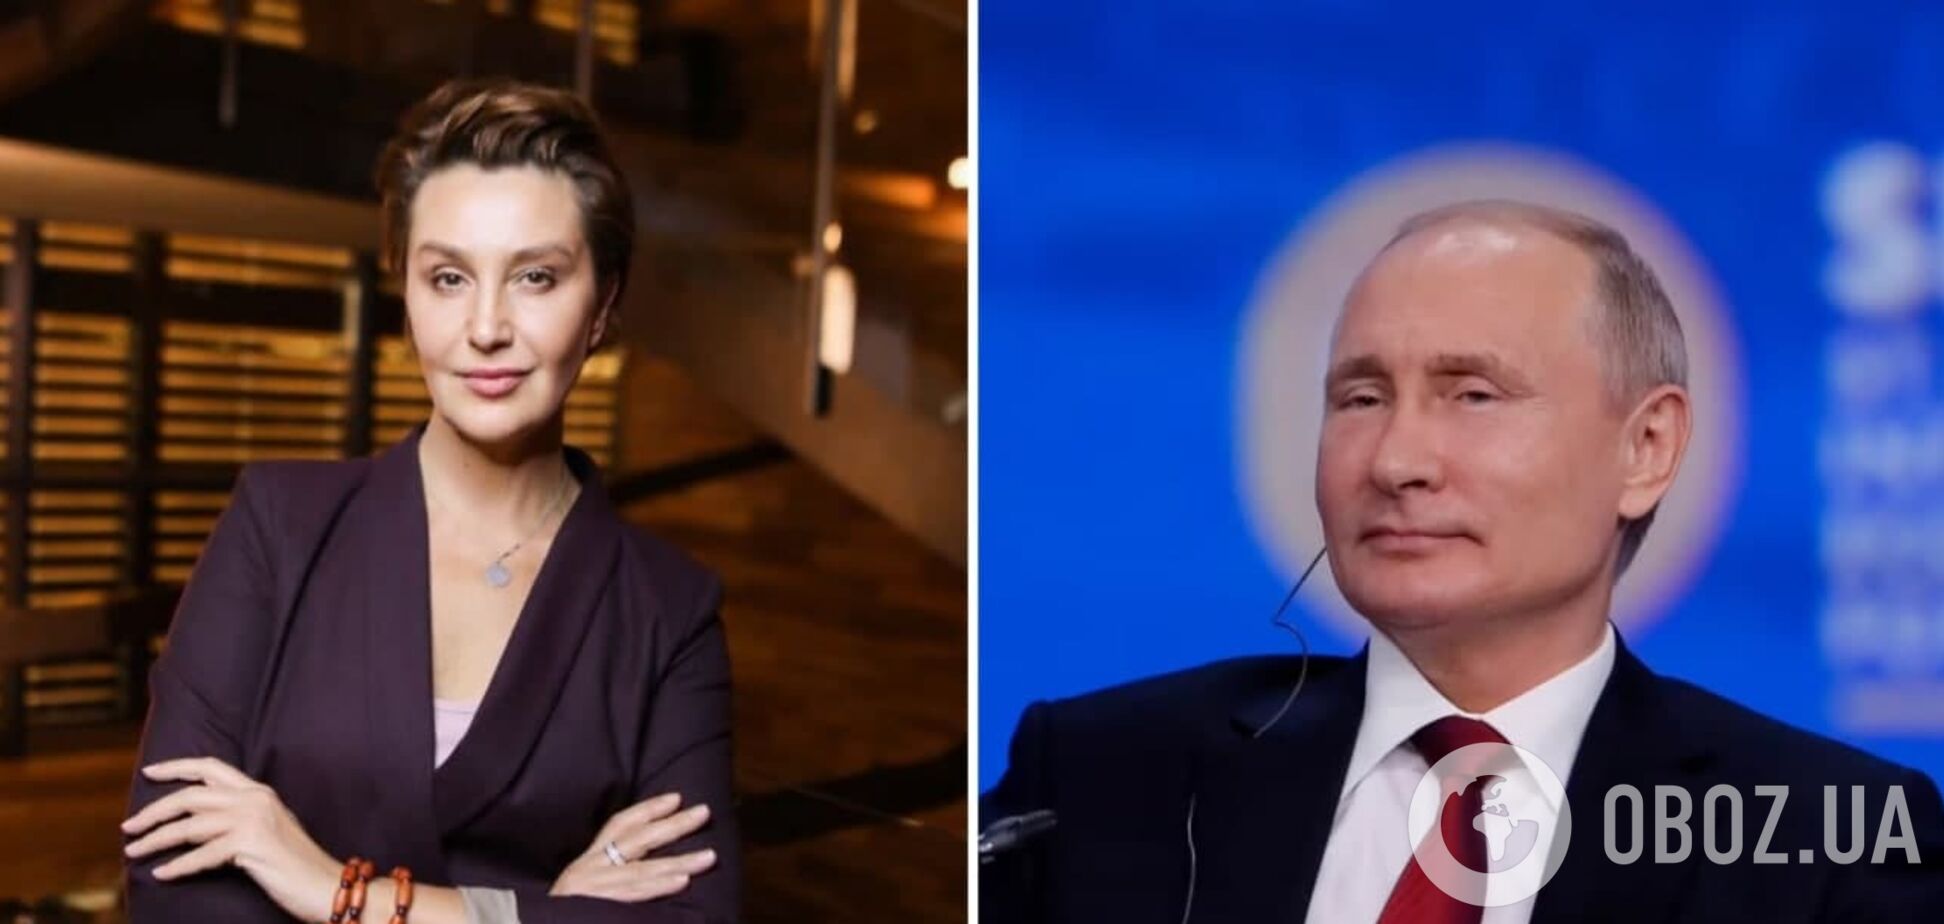 Сніжана Єгорова назвала Путіна 'героєм нашого часу' після визнання Росією 'ЛДНР'